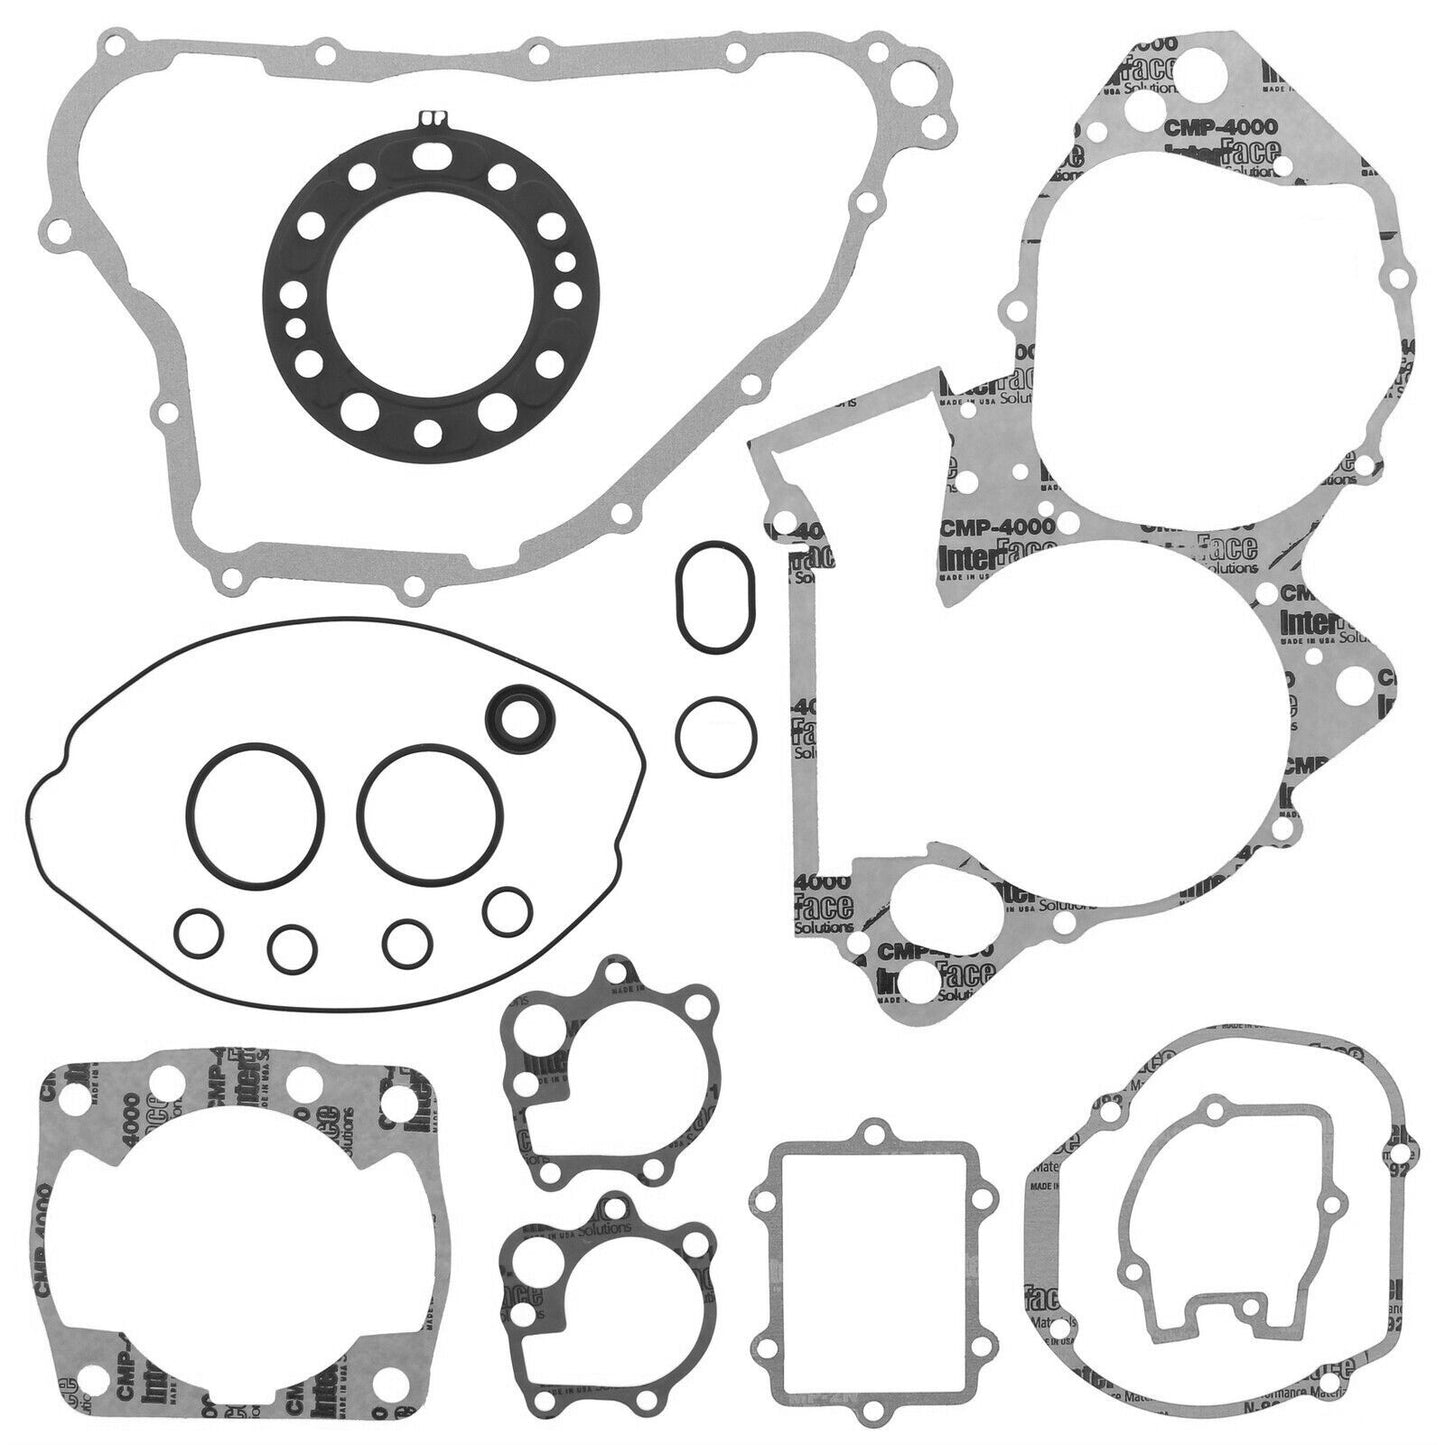 Honda CR 250 (2005 2006 2007) Engine Rebuild Kit Main Bearings, Gasket Set & Seals